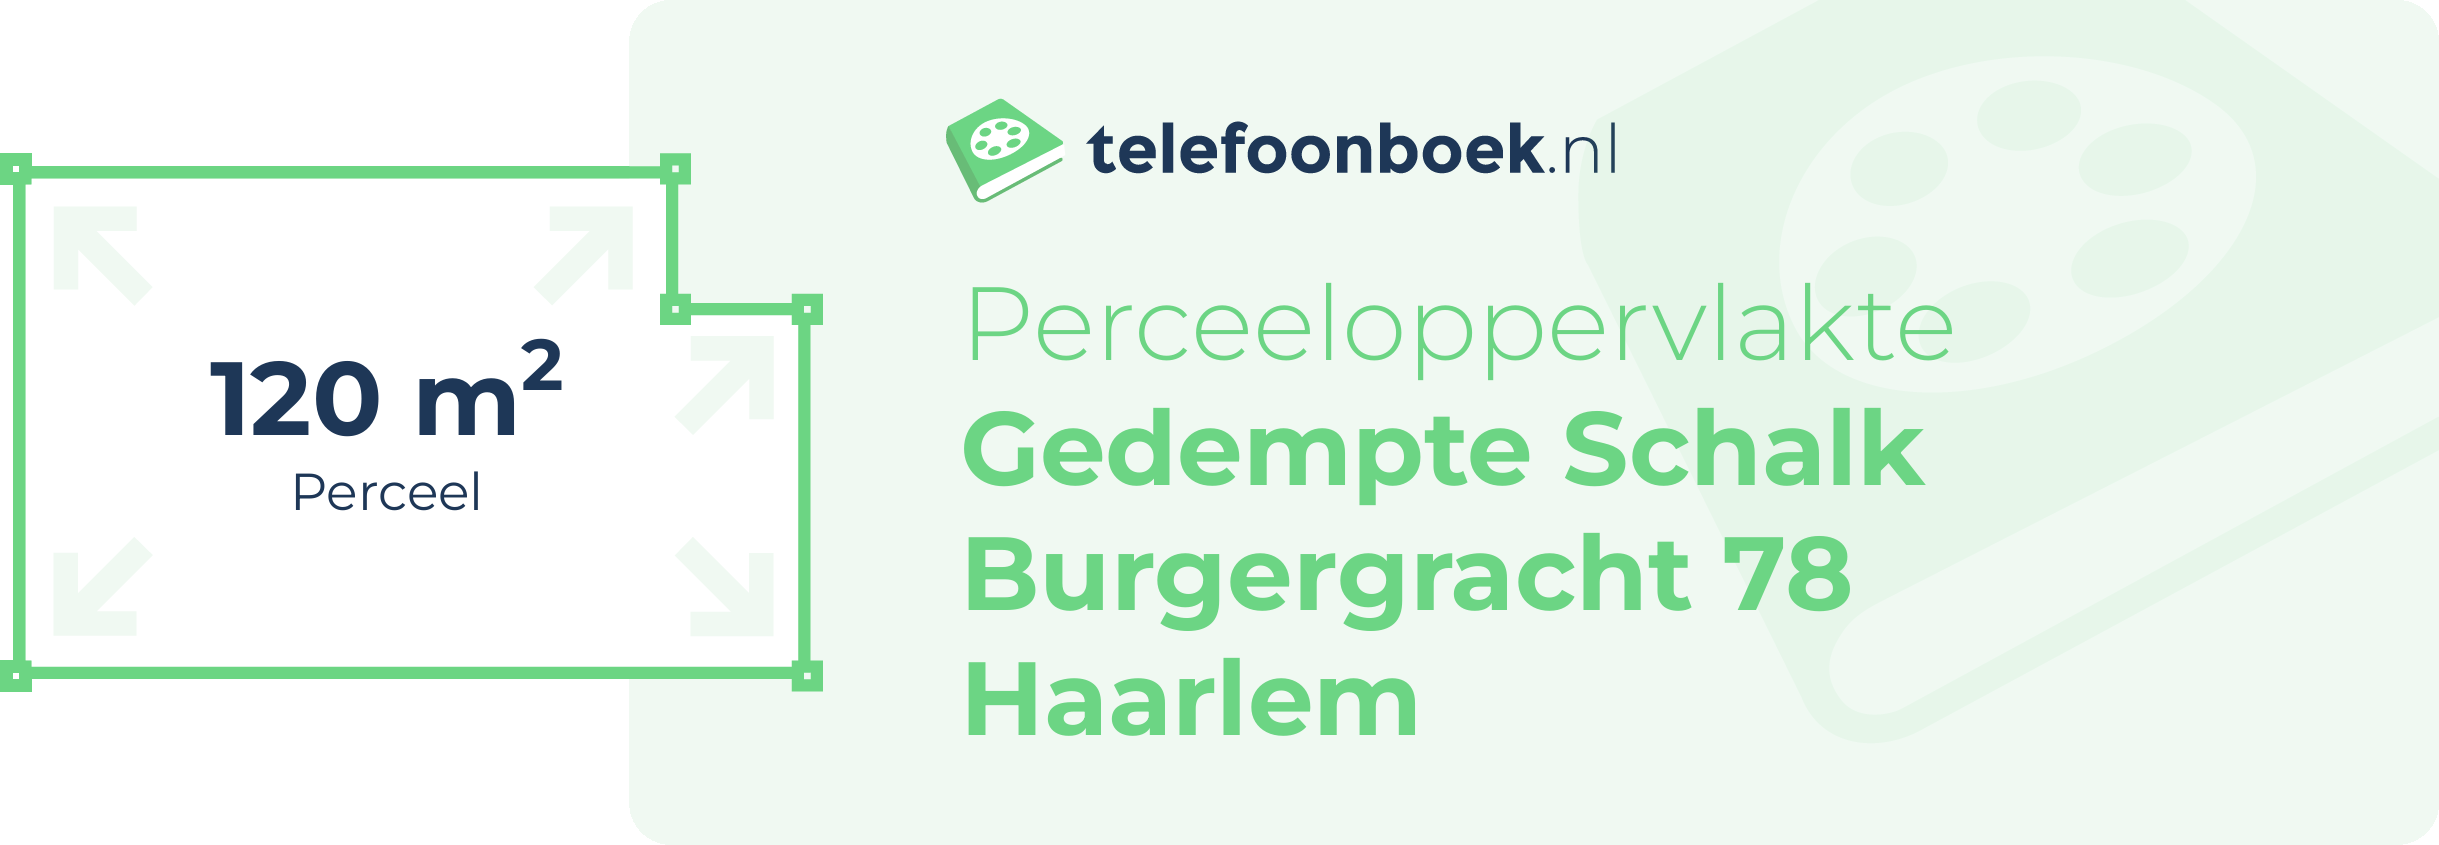 Perceeloppervlakte Gedempte Schalk Burgergracht 78 Haarlem